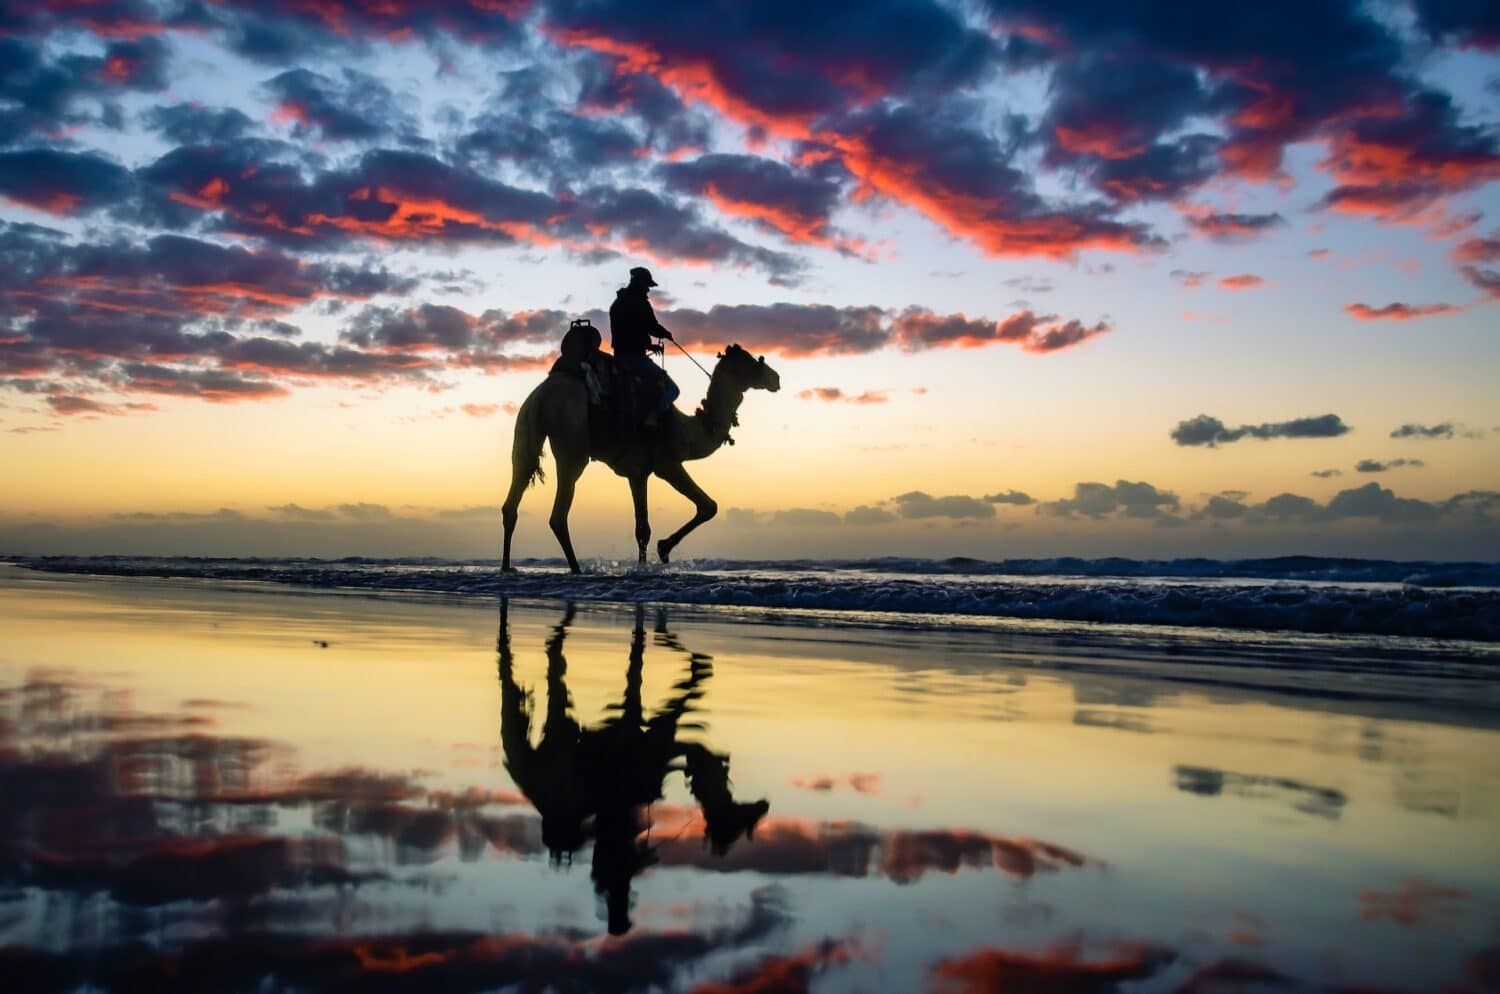 Pessoa andando de camelo em uma praia ao pôr do sol. O céu é azul com nuvens rosadas, e a água do mar reflete a imagem do camelo e do céu para ilustrar o post seguro viagem Palestina. - Foto: Brahim Fathi via Pexels